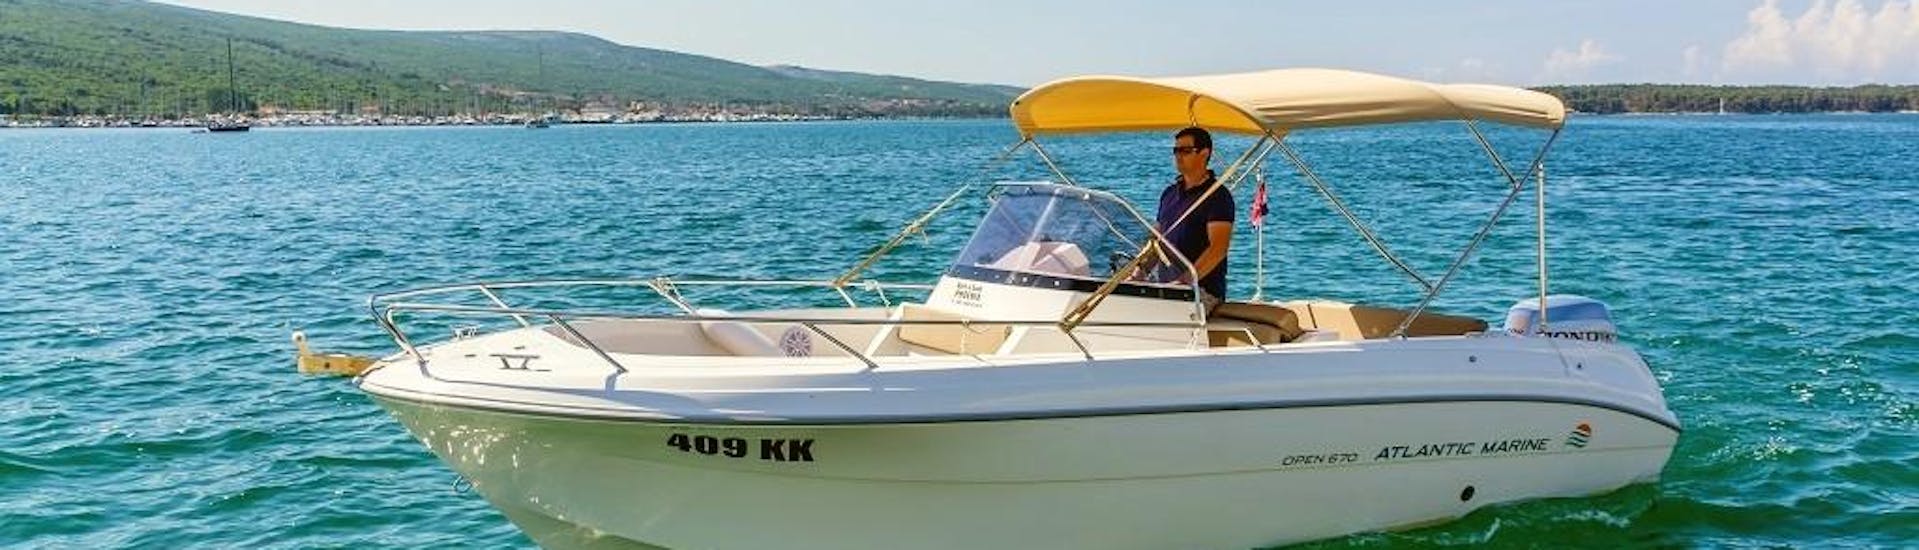 Mensen die een motorboot huren voor 10 personen in Krk met onze partner Rent a Boat Phoenix.